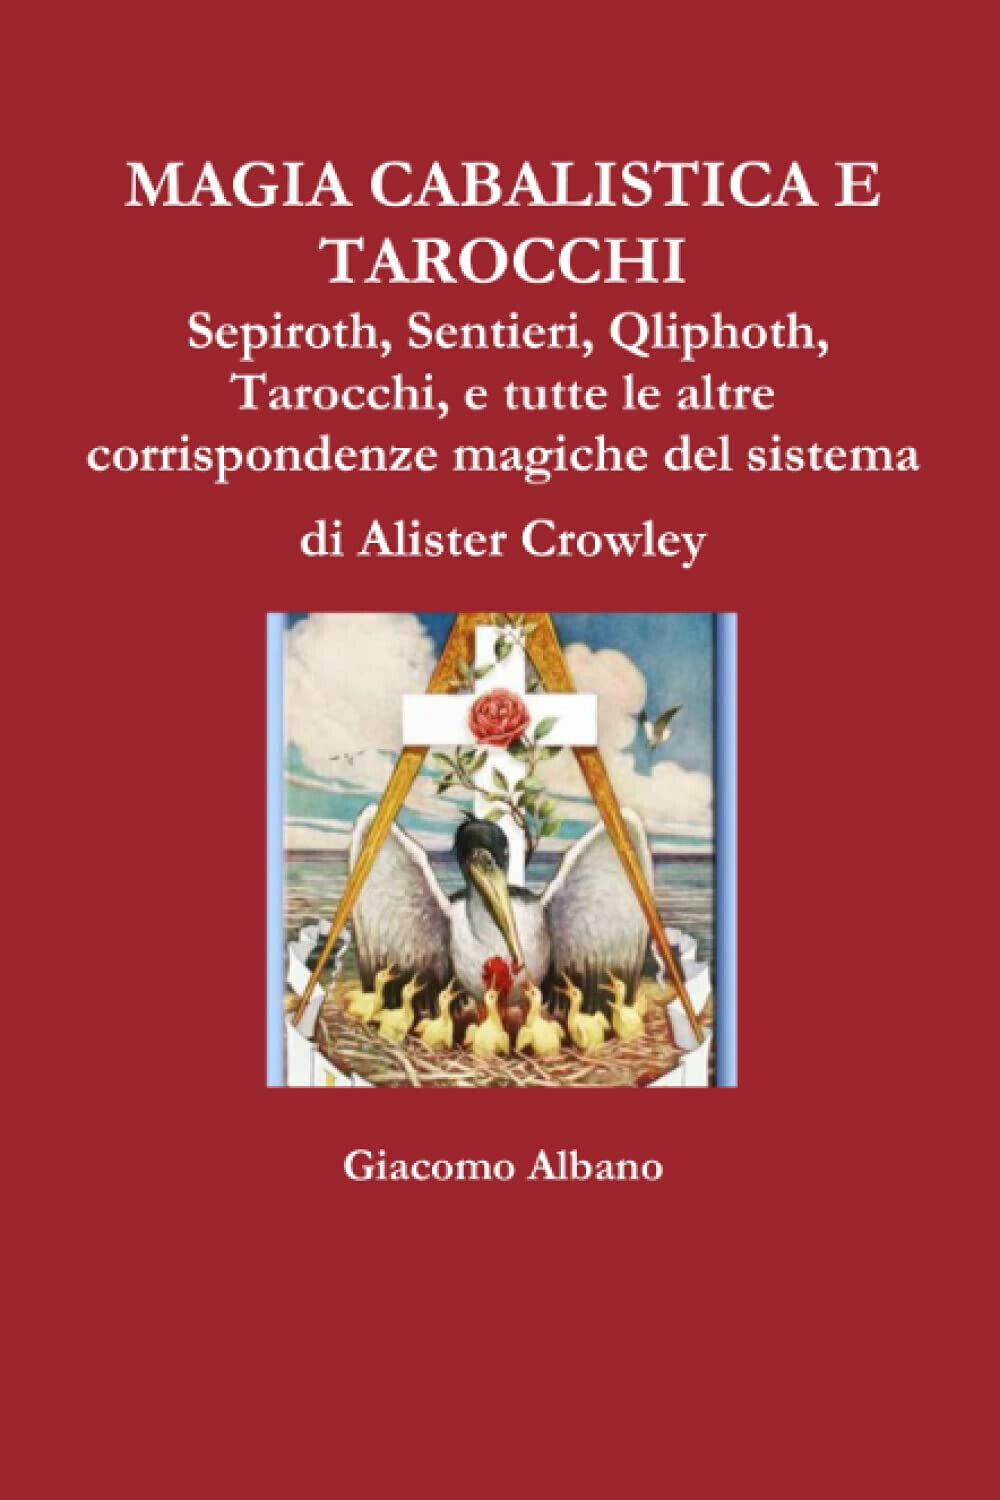 MAGIA CABALISTICA E TAROCCHI - Giacomo Albano - Lulu.com, 2015